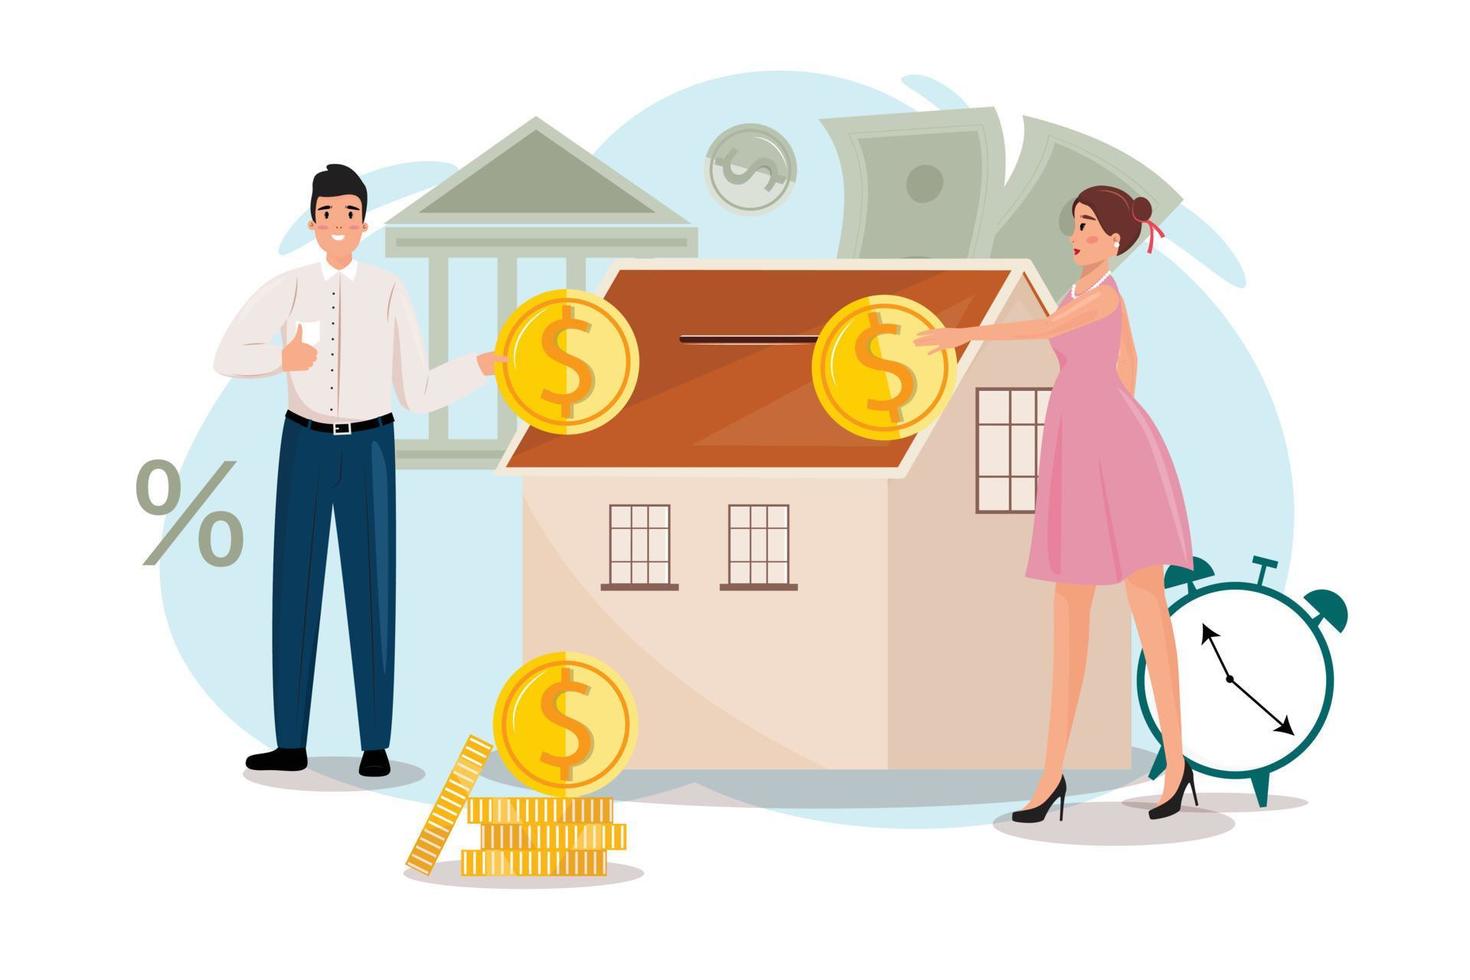 ilustração do conceito de propriedade da casa com um homem e uma mulher. ilustração moderna com homem e mulher investindo em imóveis. vetor